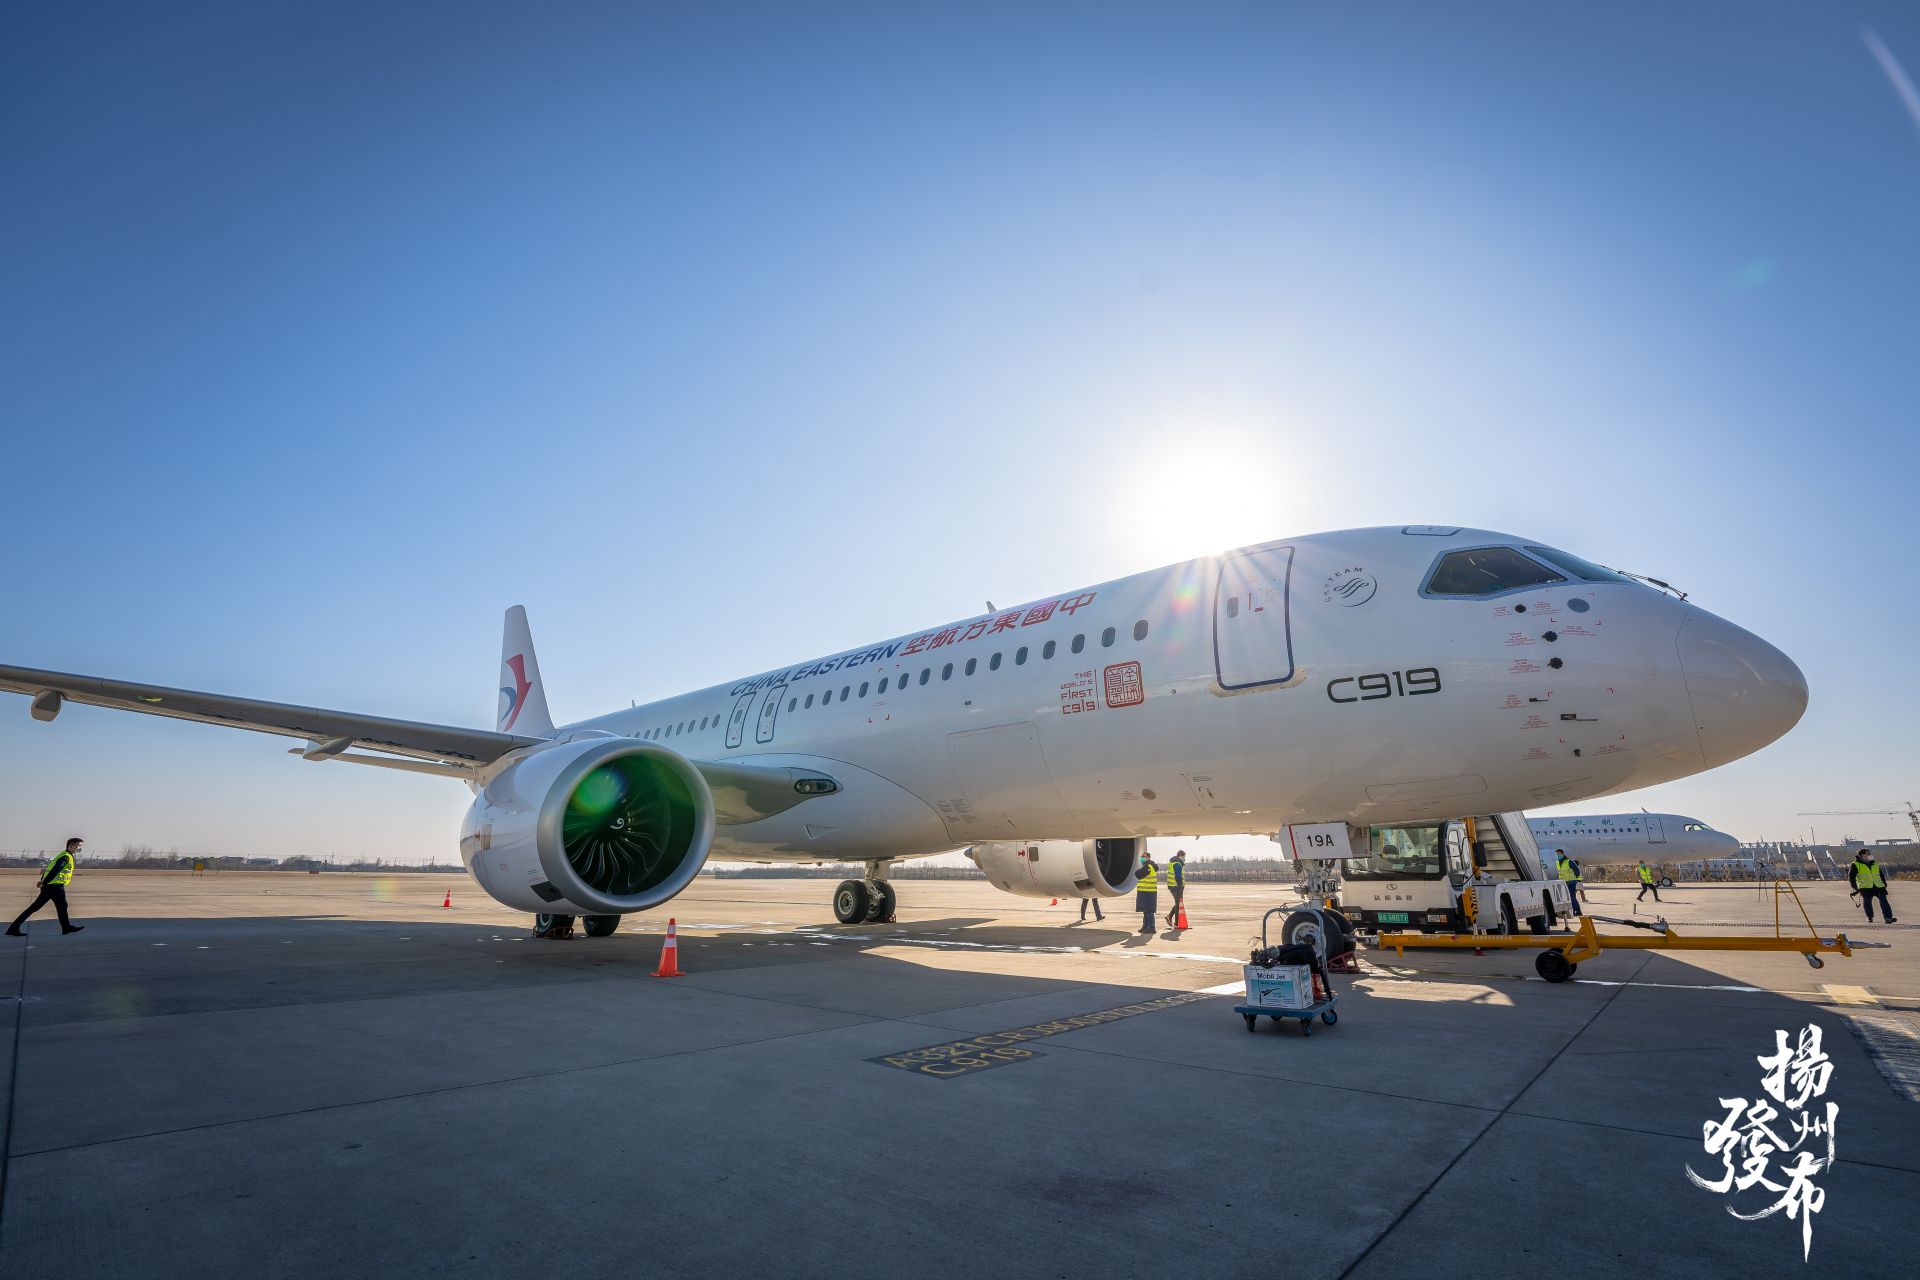 扬州泰州国际机场迎来东航全球首架c919客机_扬州发布